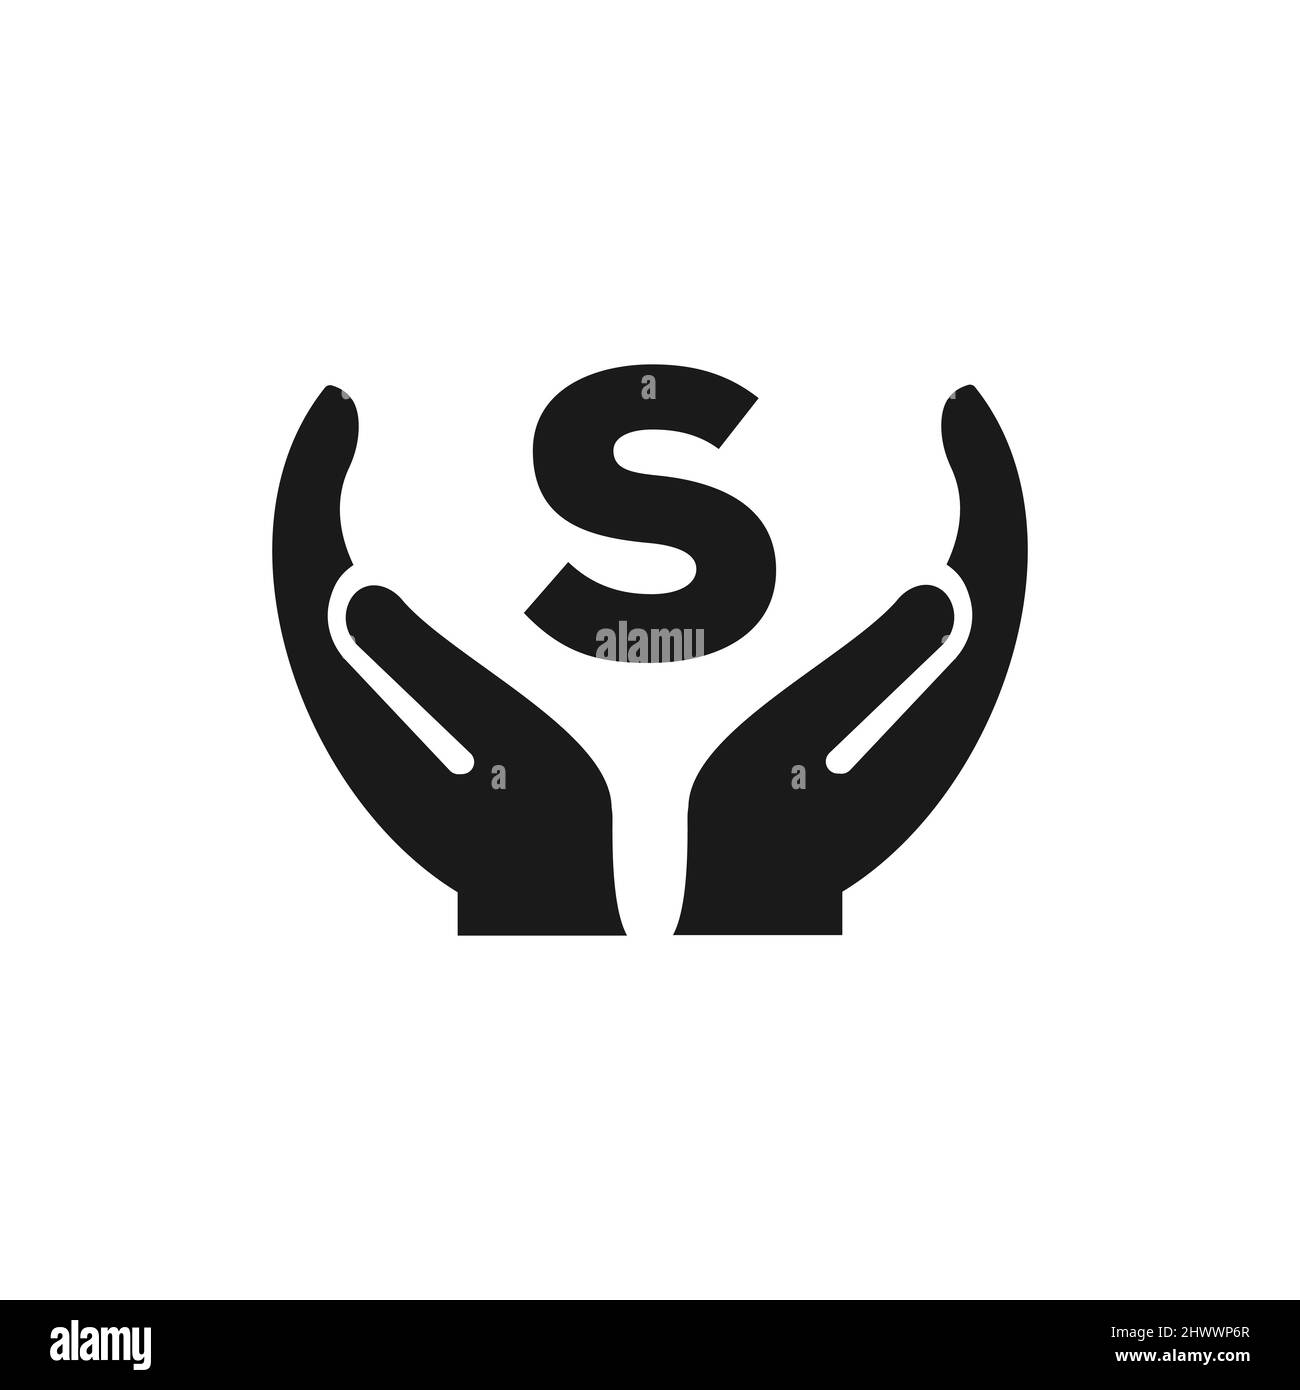 Letter S Giving Hand Logo Design. Hand Logo Design On Letter S Vector Template Stock Vector